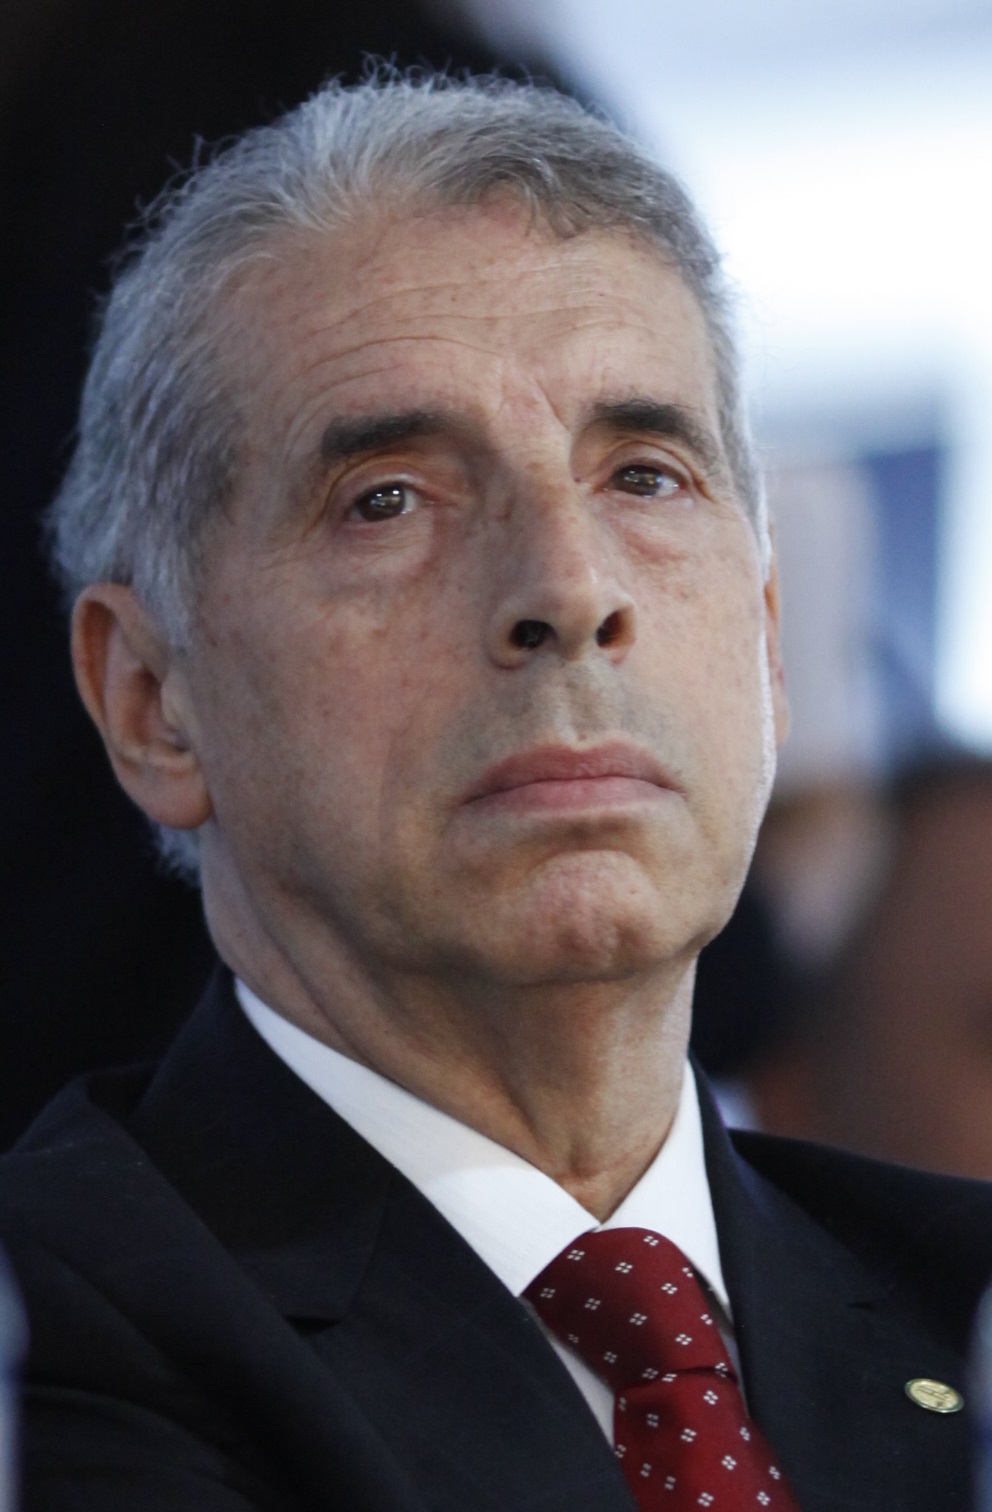 José Fogaça in November 2015.